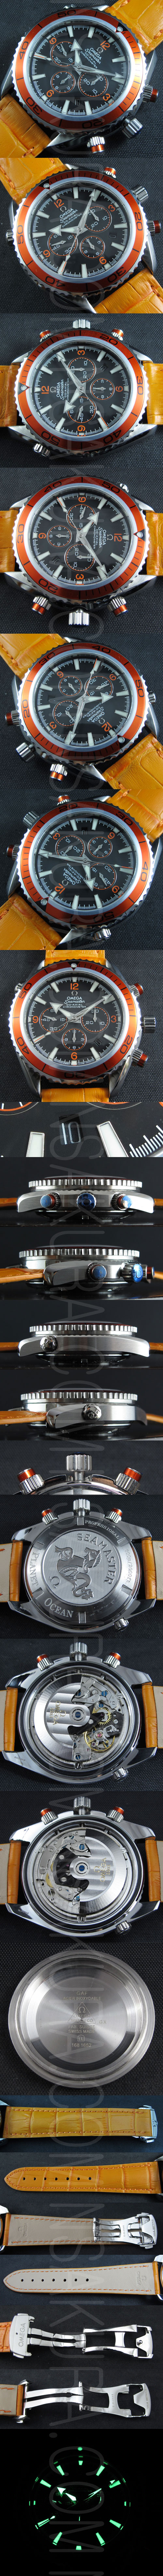 レプリカ時計オメガ シーマスター プラネット オーシャン Asian 7750搭載 28800振動 - ウインドウを閉じる